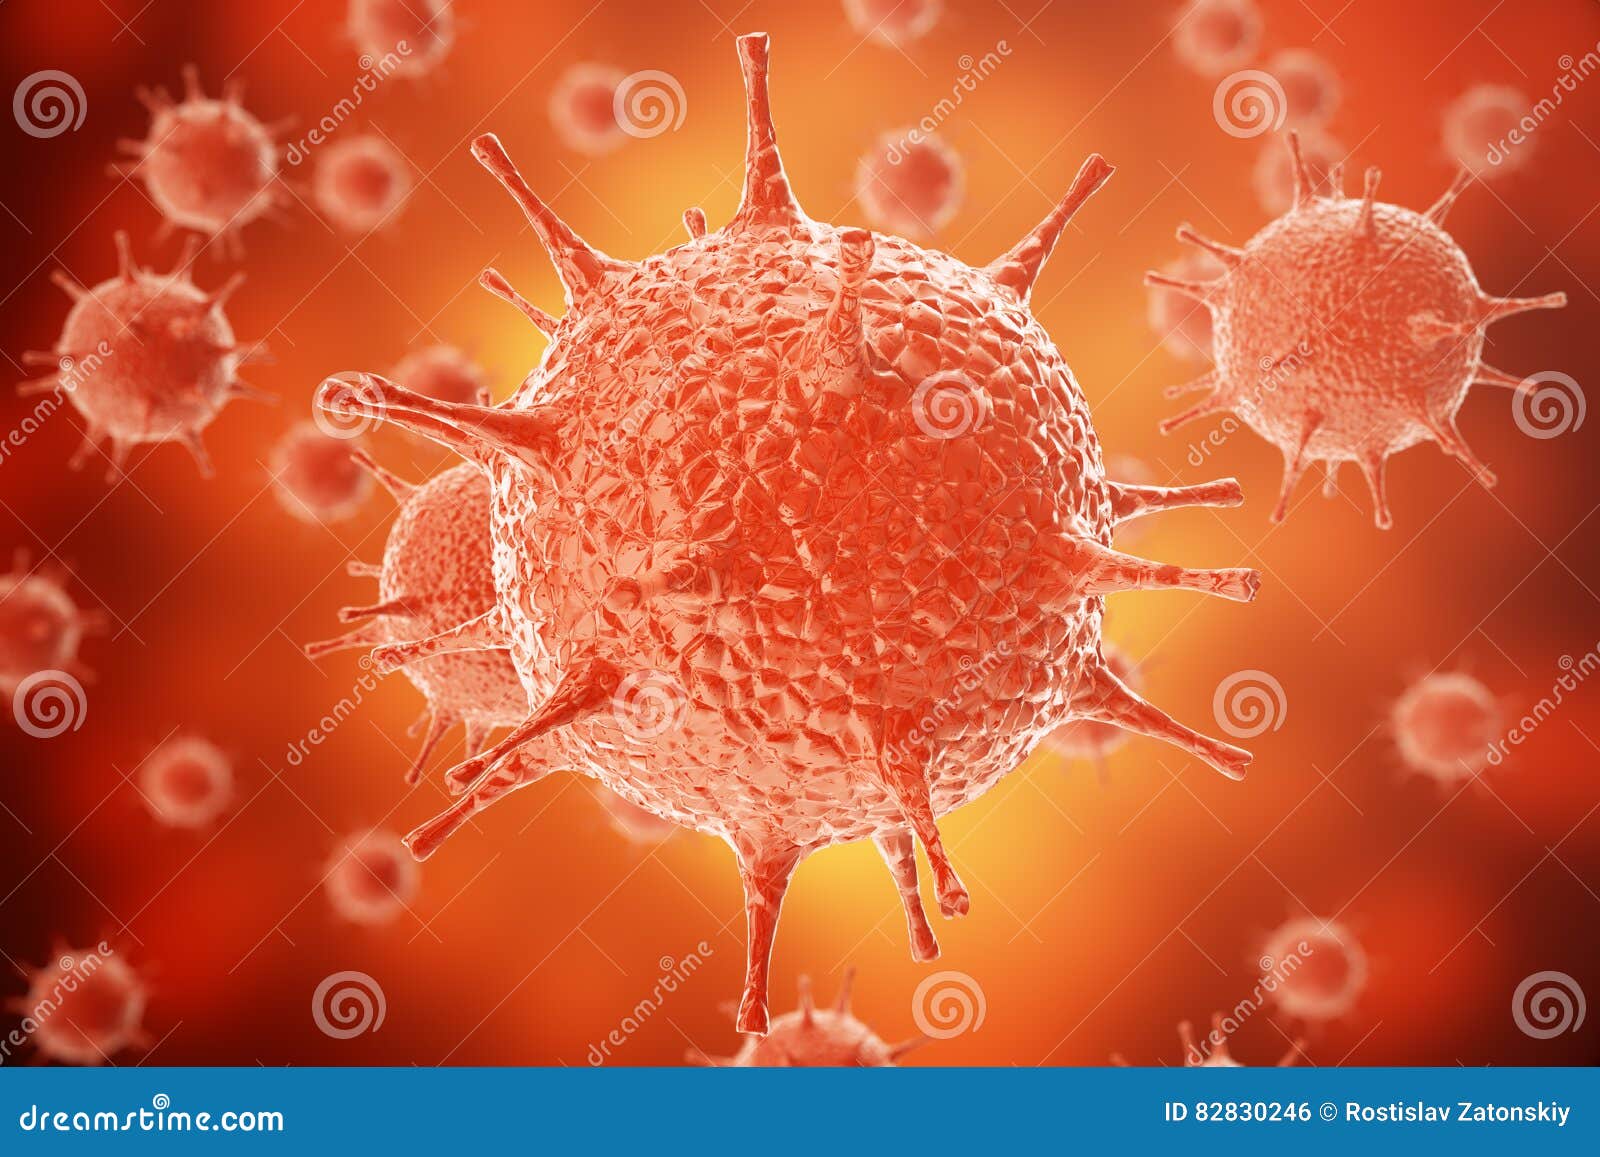 3d rendering of influenza virus h1n1. swine flu, infect organism, viral disease epidemic